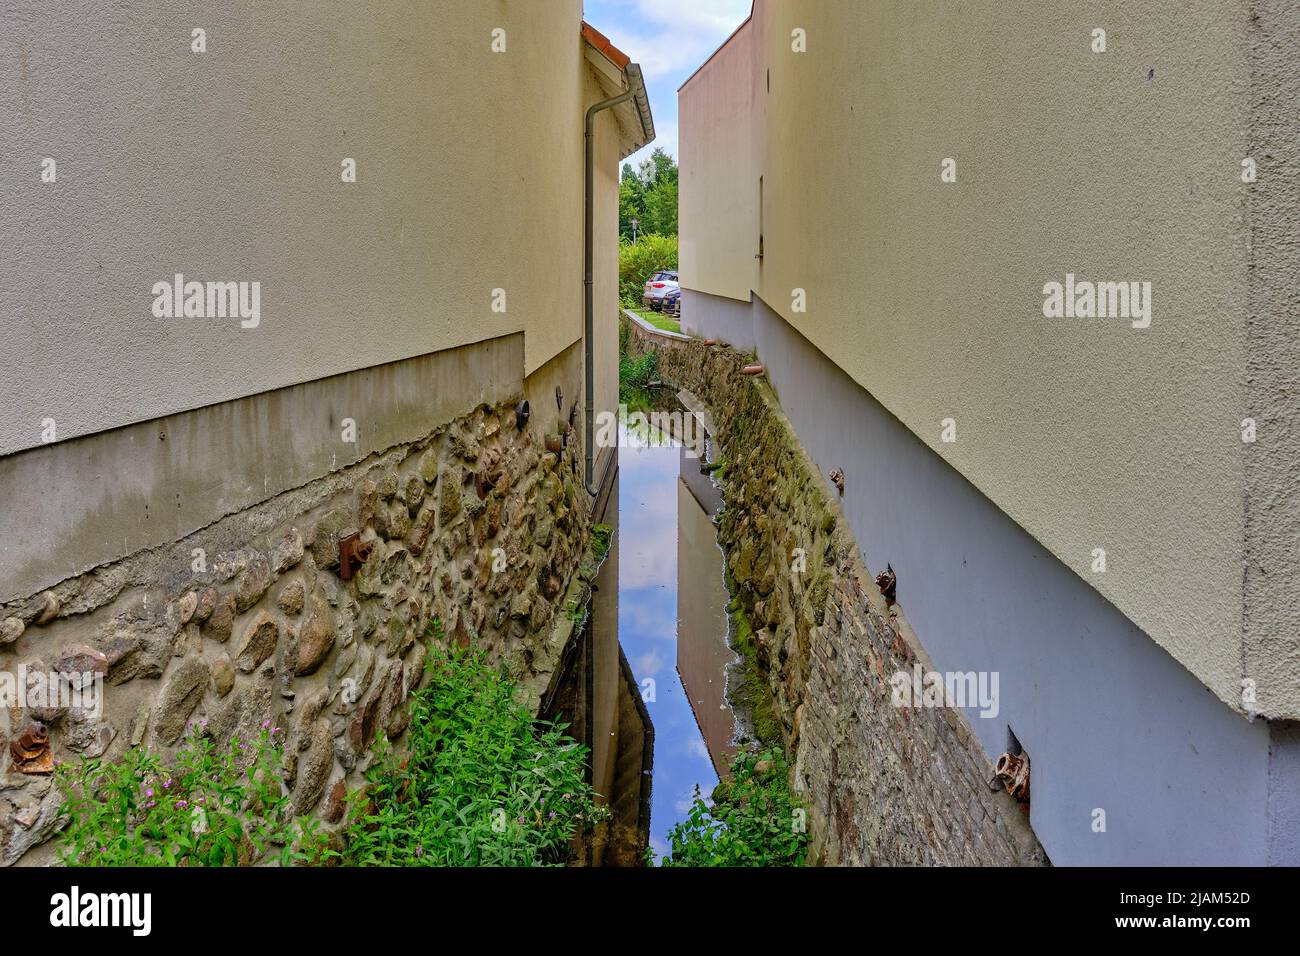 Schmale Lücke zwischen zwei Häusern, durch die ein kleiner Bach fließt; im historischen Stadtzentrum von Waren, Mecklenburg-Vorpommern, Deutschland. Stockfoto